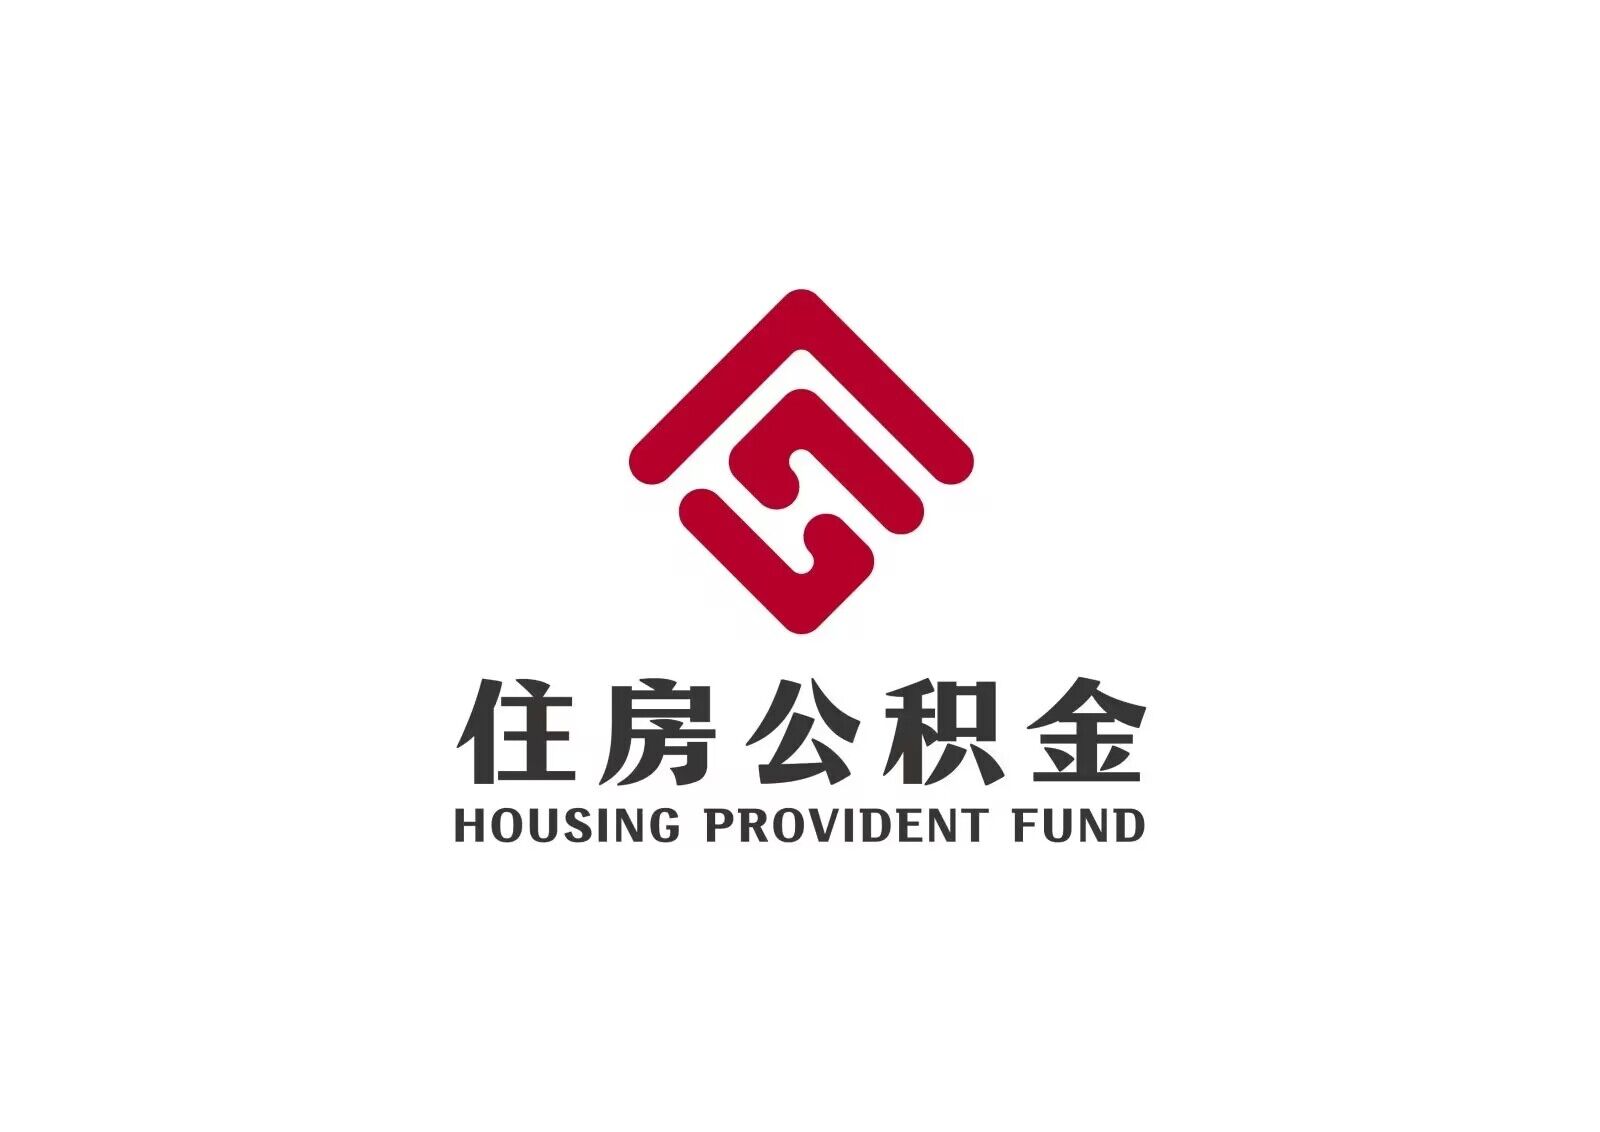 建造、翻建、大修北京市自住住房提取指南